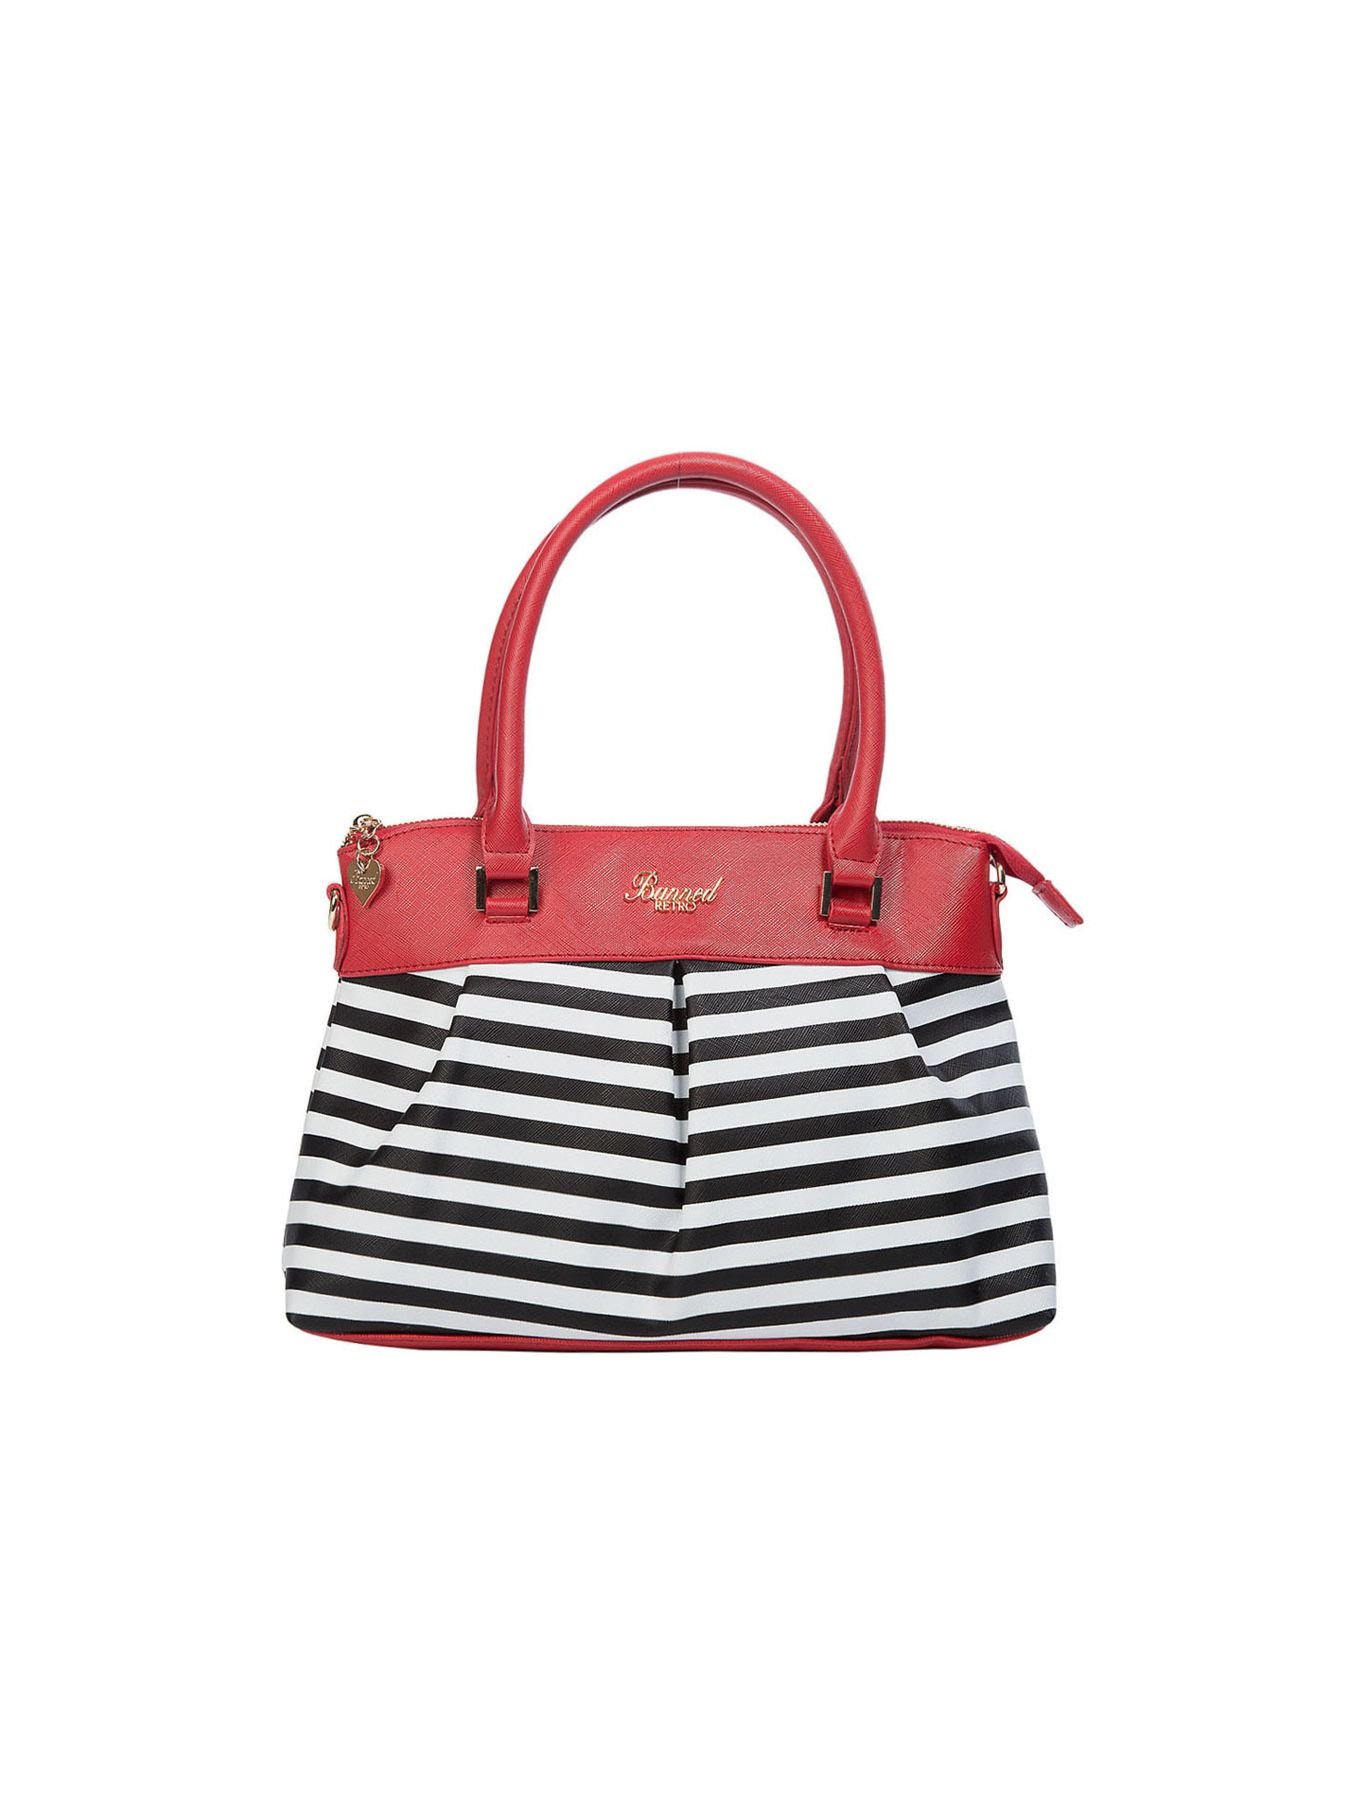 Living bay handbag red